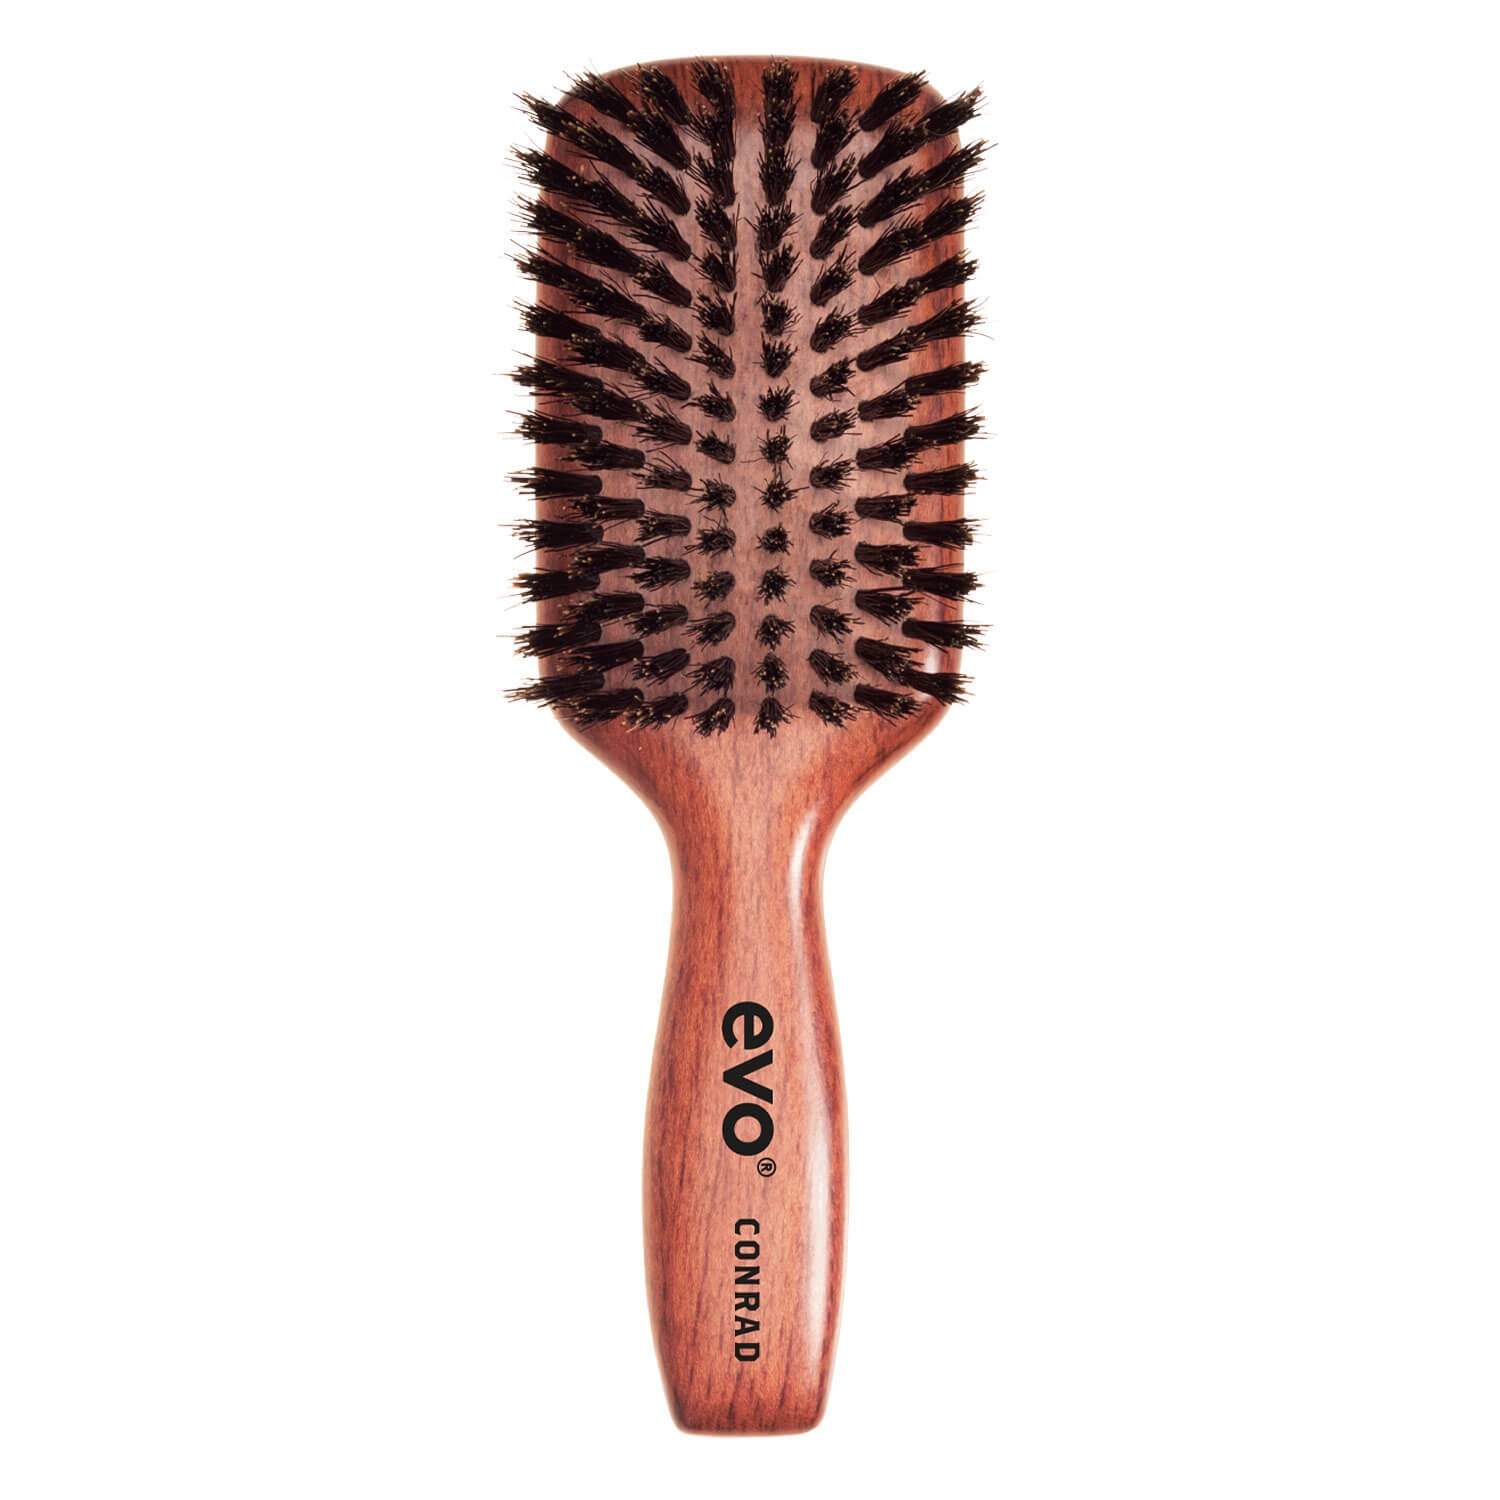 Product image from evo brushes - conrad bristle paddle brush